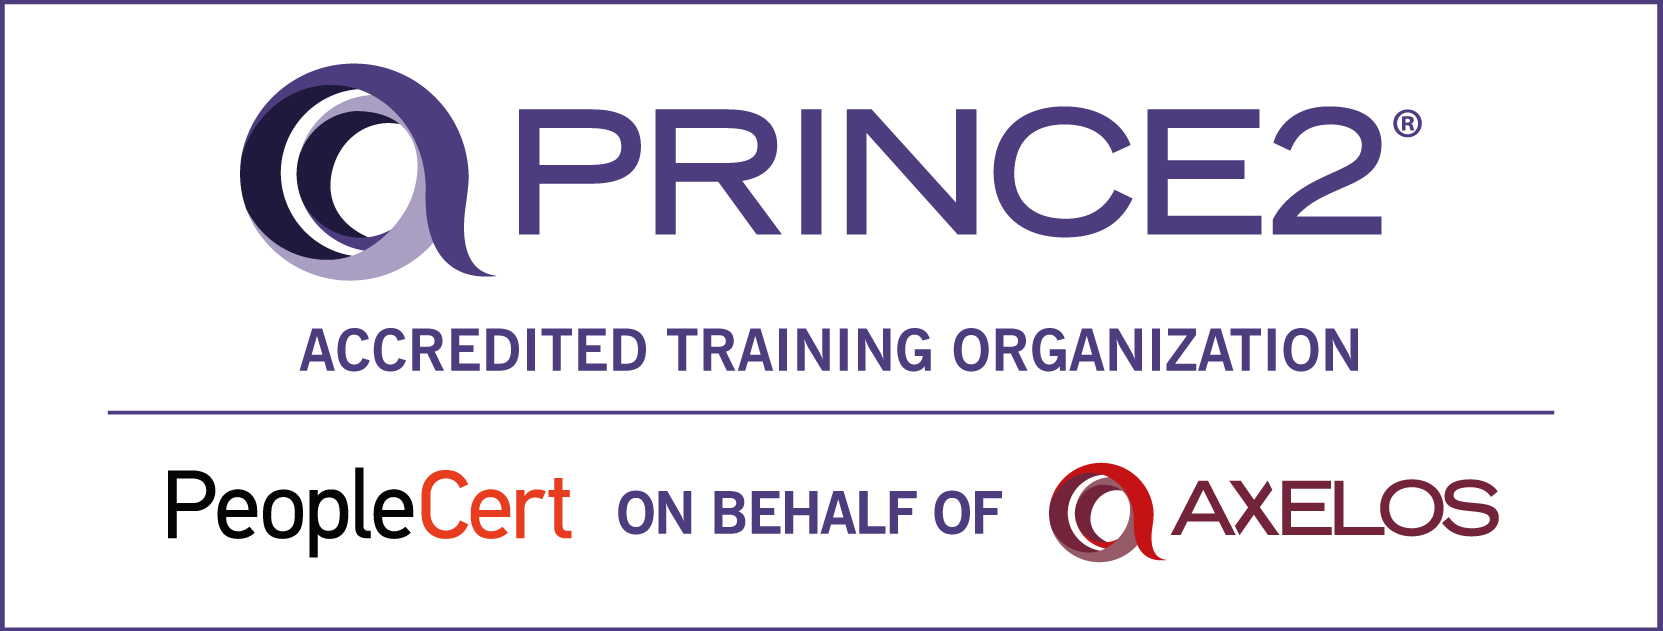 PRINCE2_ATO logo (1)